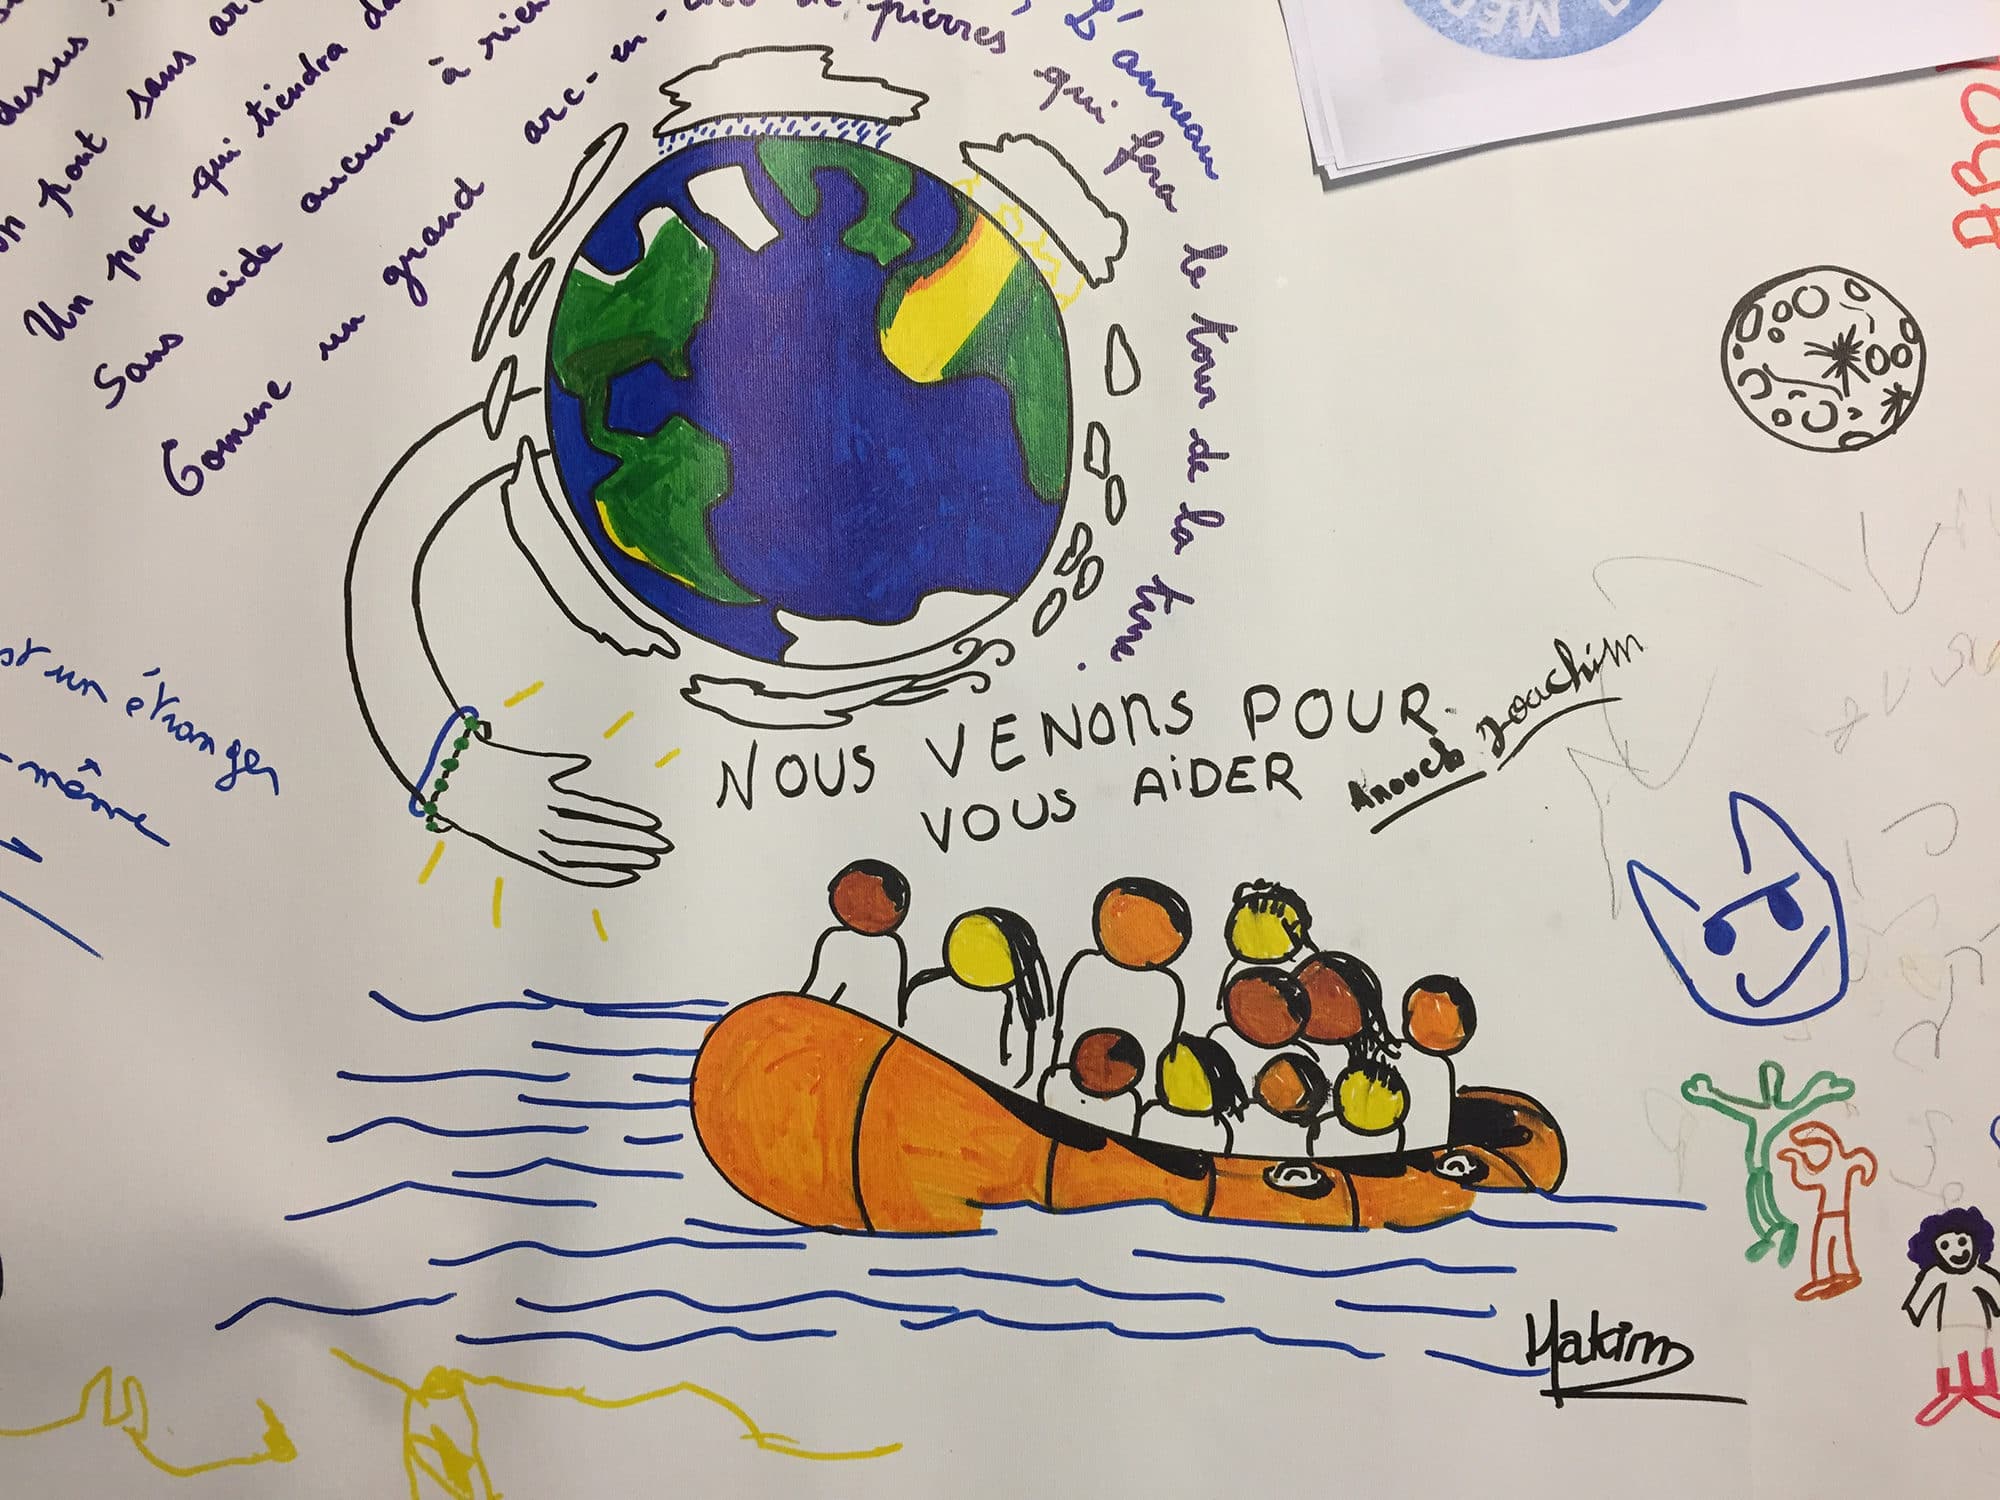 La programmation Bienvenue repart en 2019, toujours au profit de SOS Méditerranée